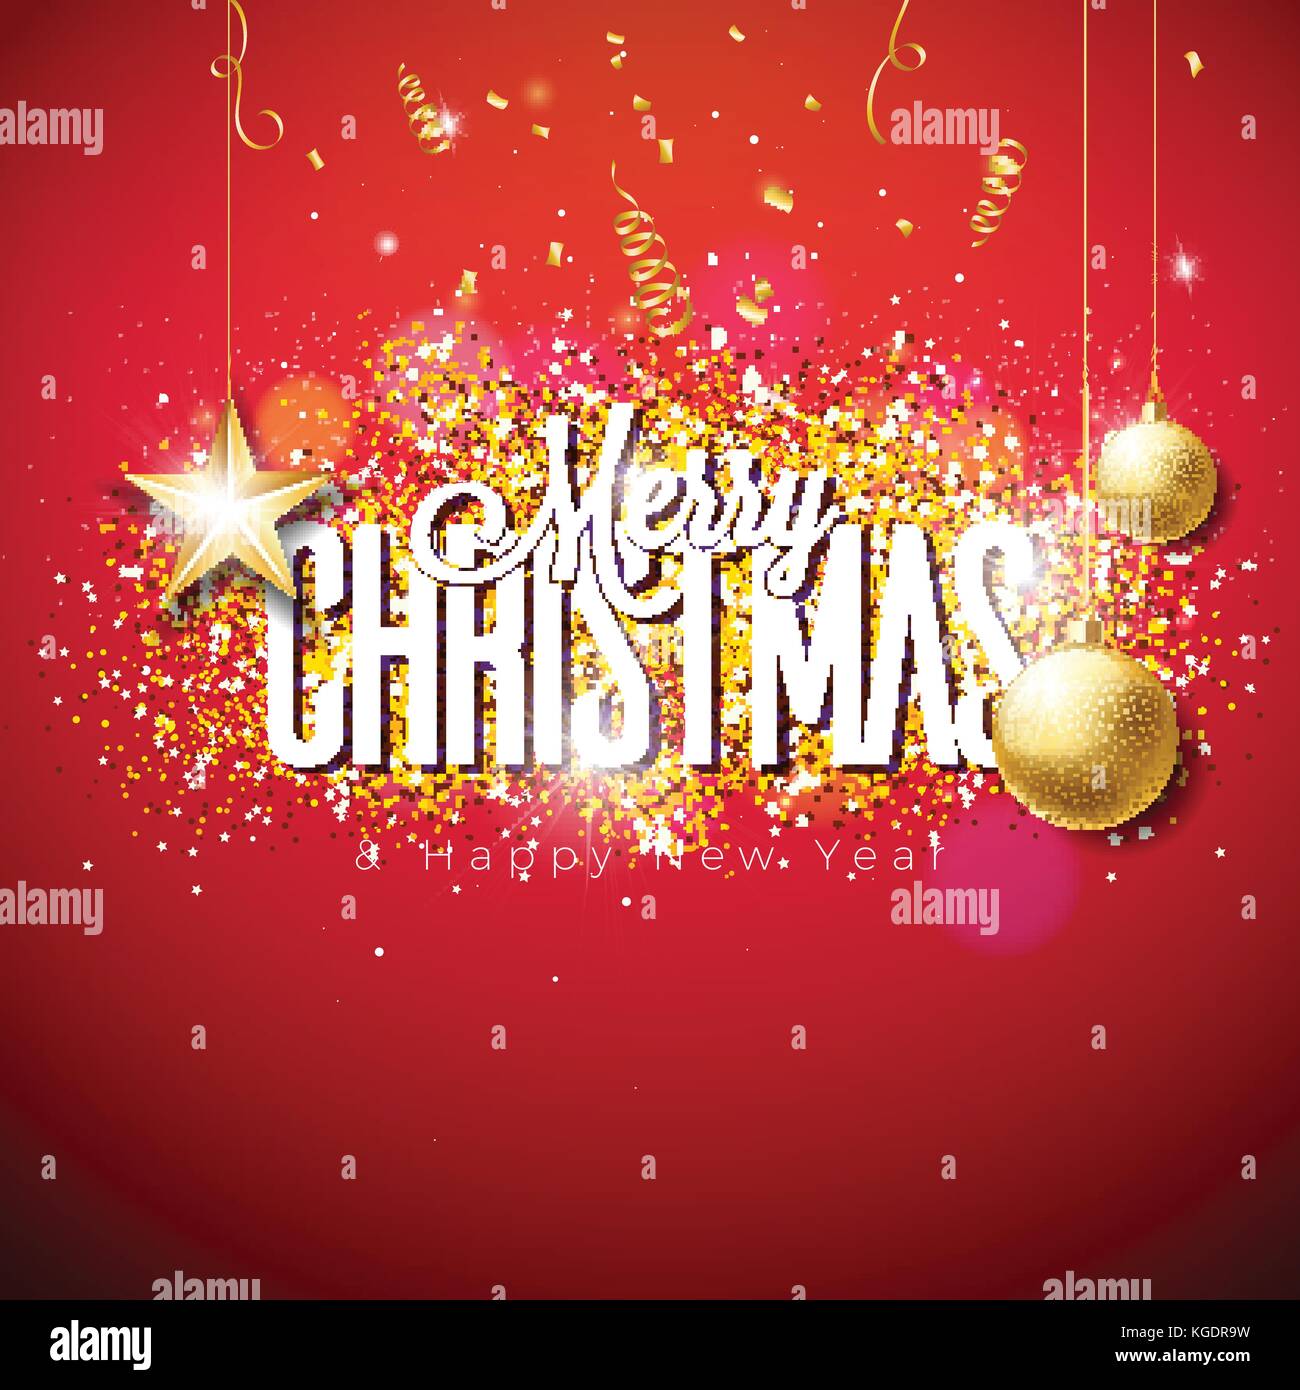 Vector Merry Christmas illustrazione sul lucido sfondo luminoso con la tipografia e elementi di vacanza. carta ritagliata stelle, coriandoli, serpentine e sfera ornamentali. Illustrazione Vettoriale